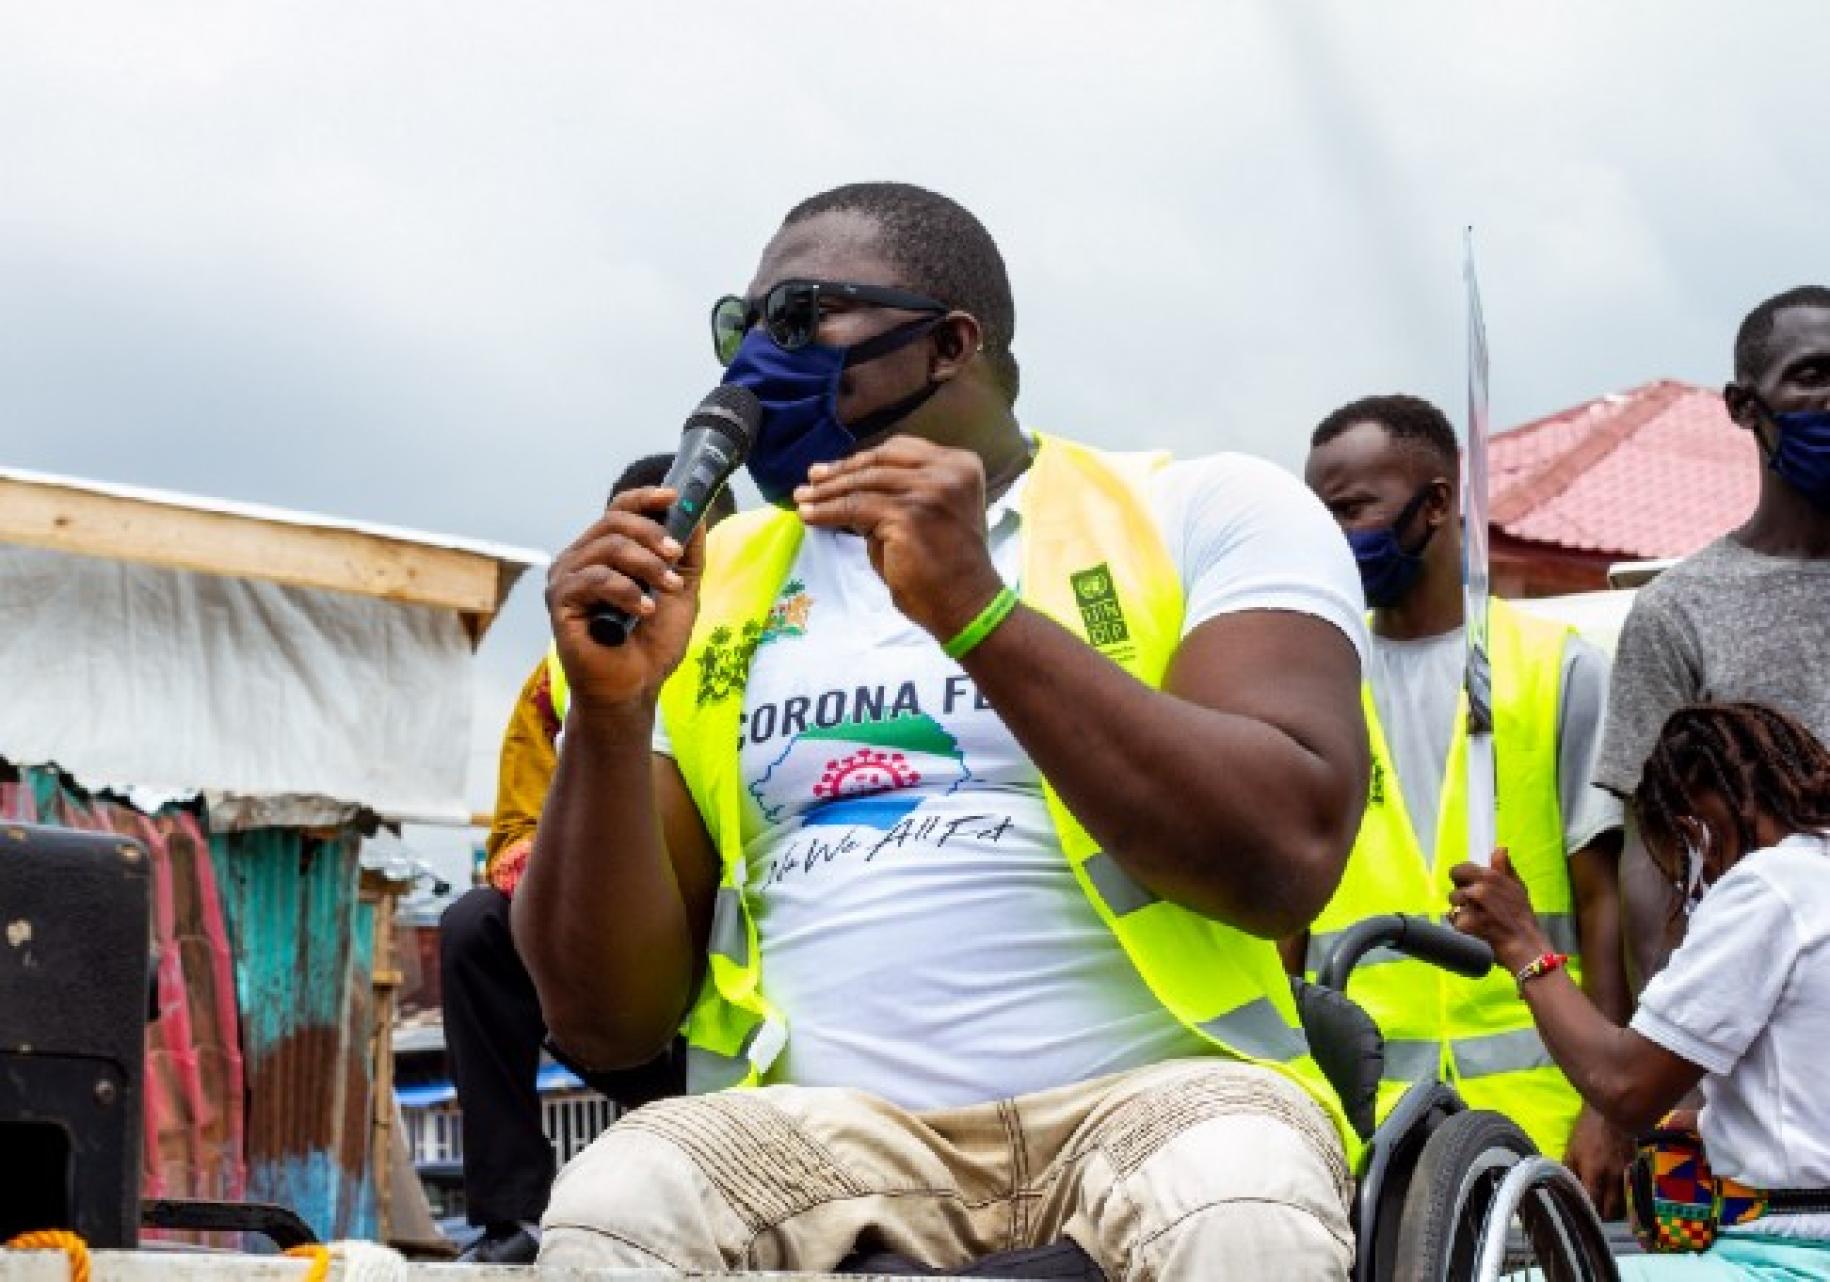 جورج ويندهام، الحاصل على ميدالية بارالمبية من سيراليون، على كرسيه المتحرك يخاطب الجمهور